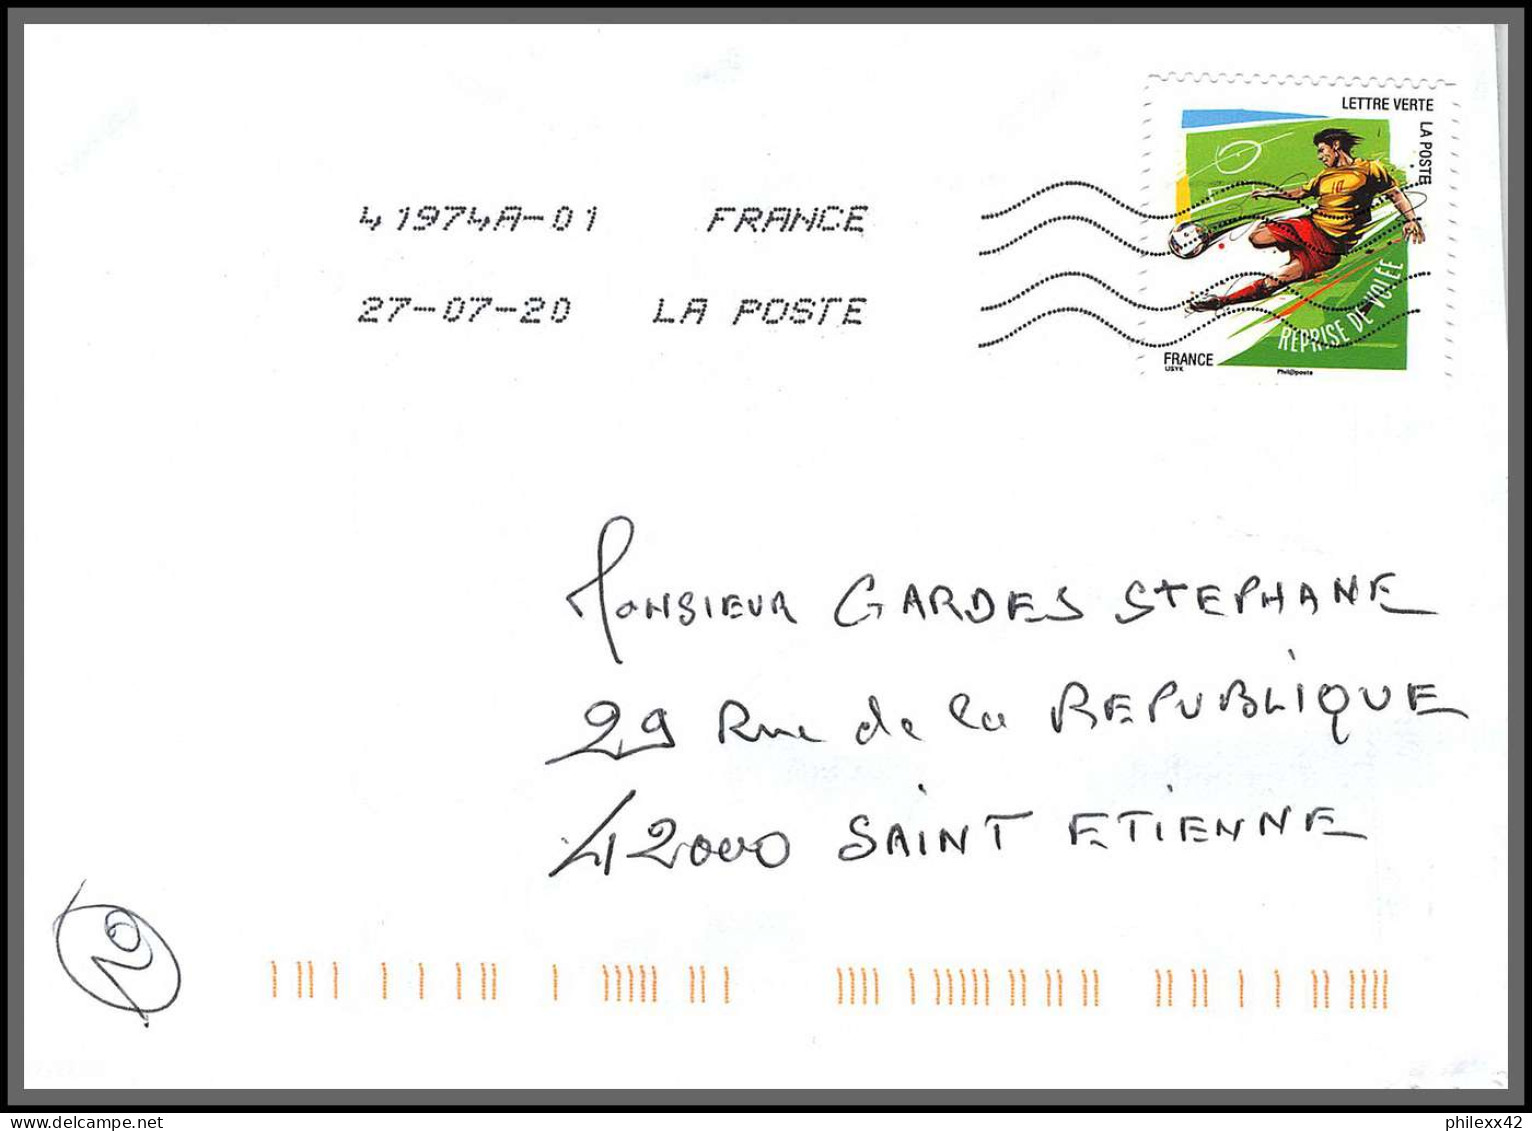 95877 - lot de 15 courriers lettres enveloppes de l'année 2020 divers affranchissements en EUROS